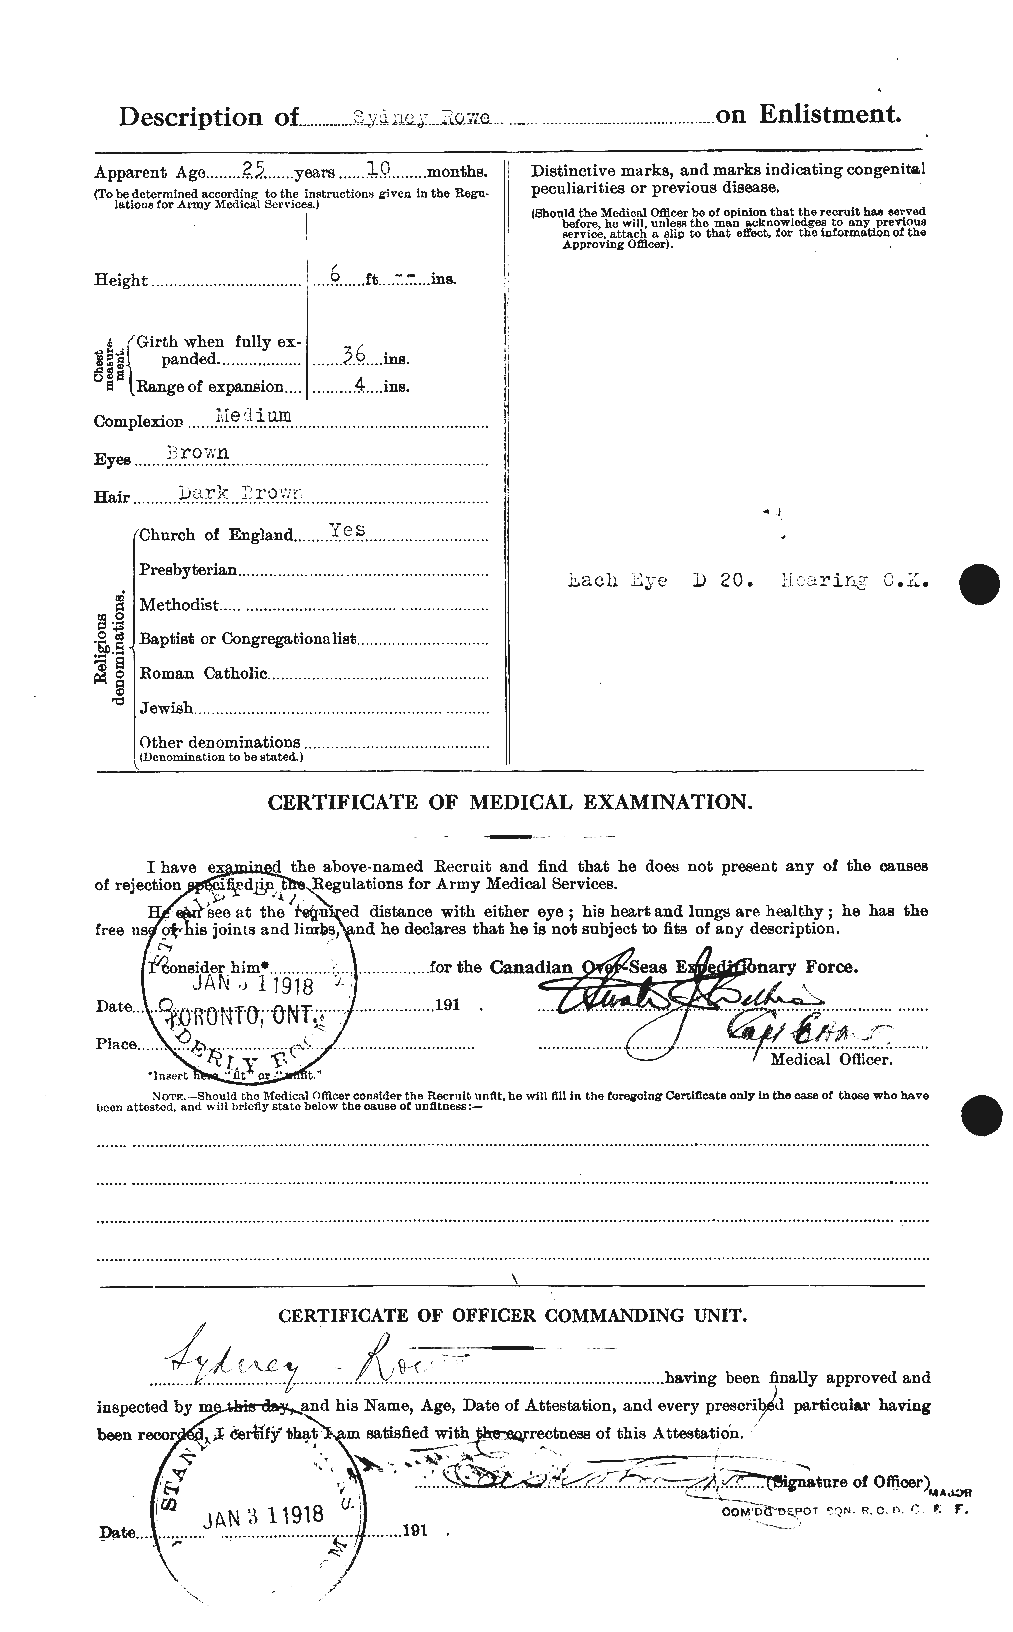 Dossiers du Personnel de la Première Guerre mondiale - CEC 615995b